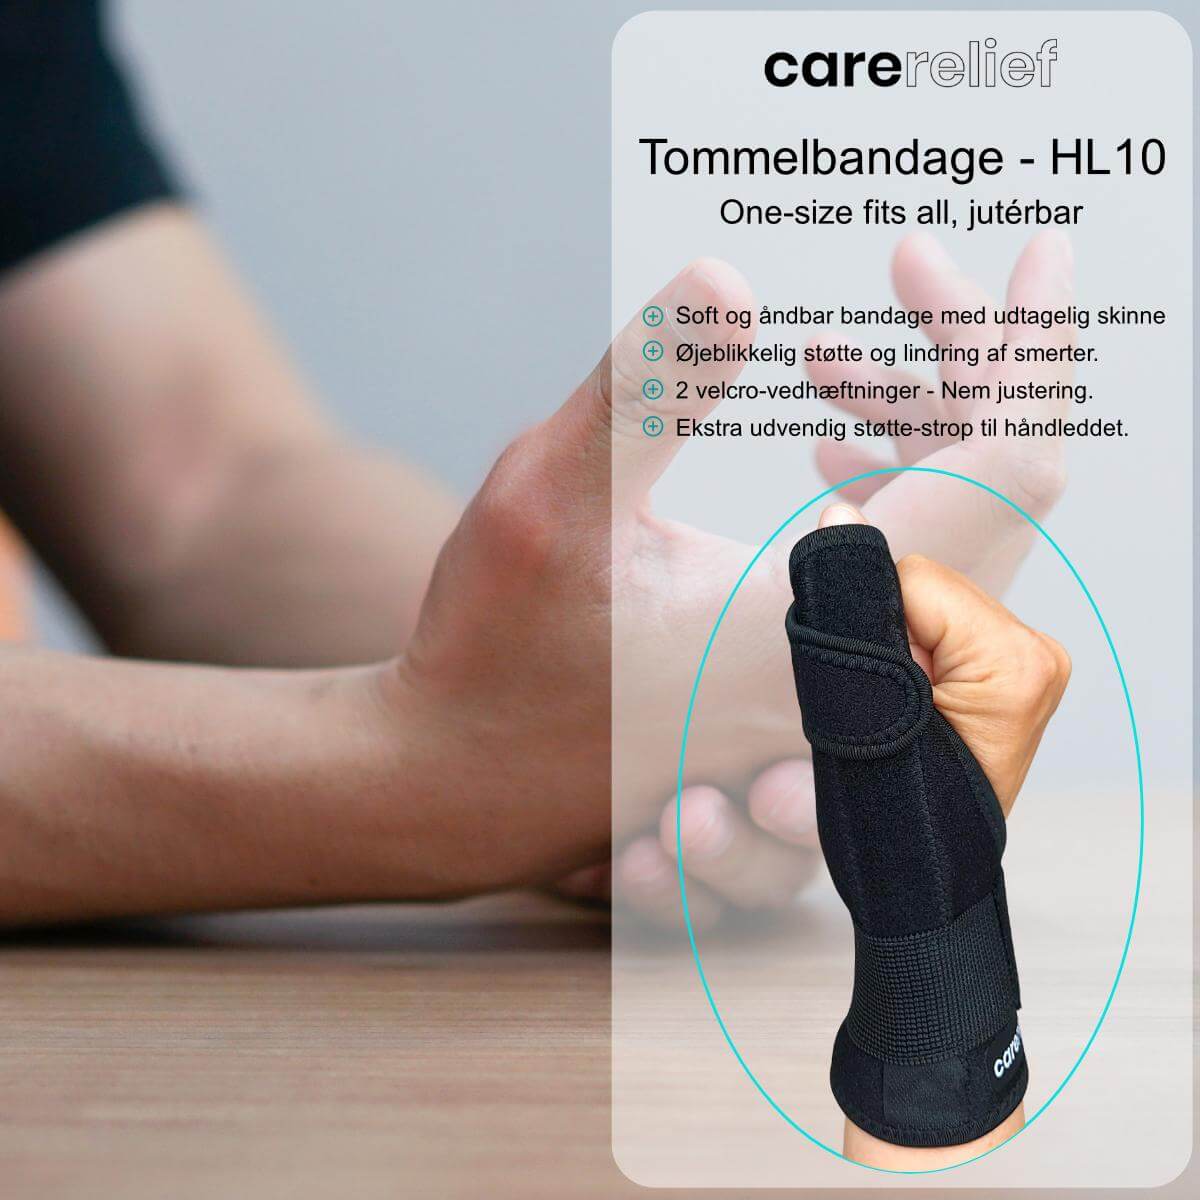 Kvalitets tommelfingerskinne og håndledsstøtte HL10, justérbar, one-size, sort. Køb bandage med skinne og støtte til tommel og håndled ved smerter fra skader, overbelastning og slidgigt.